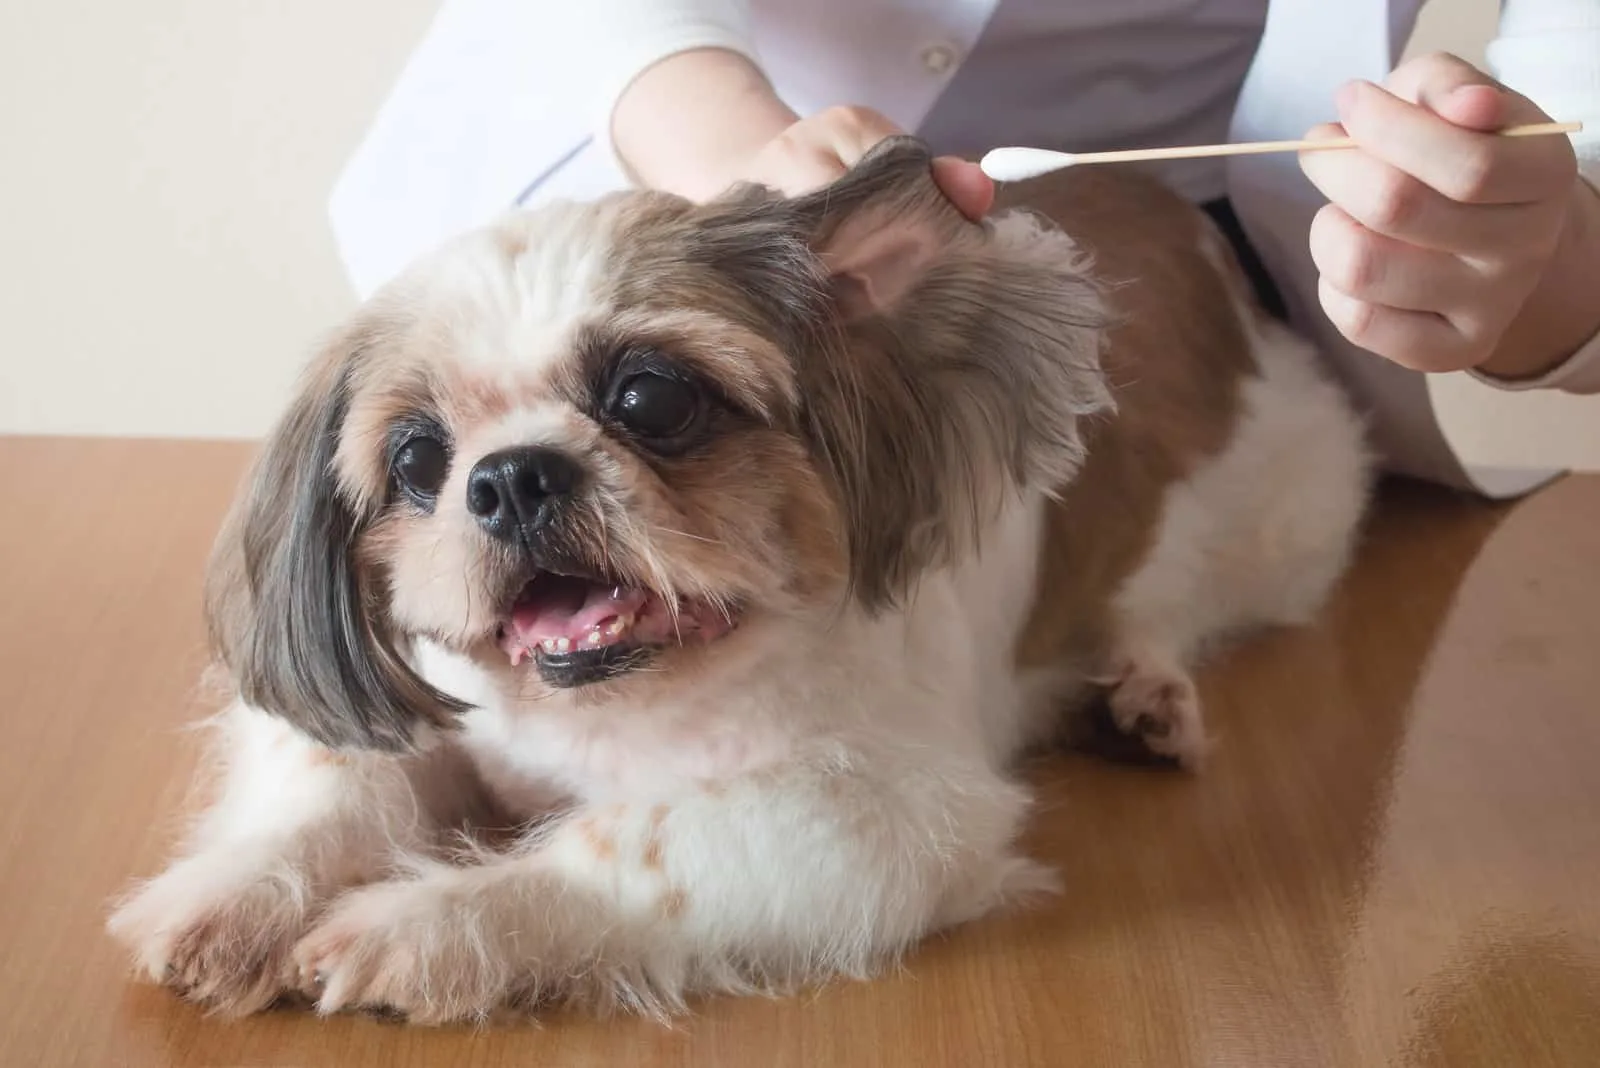 vet cleaning dog's ears